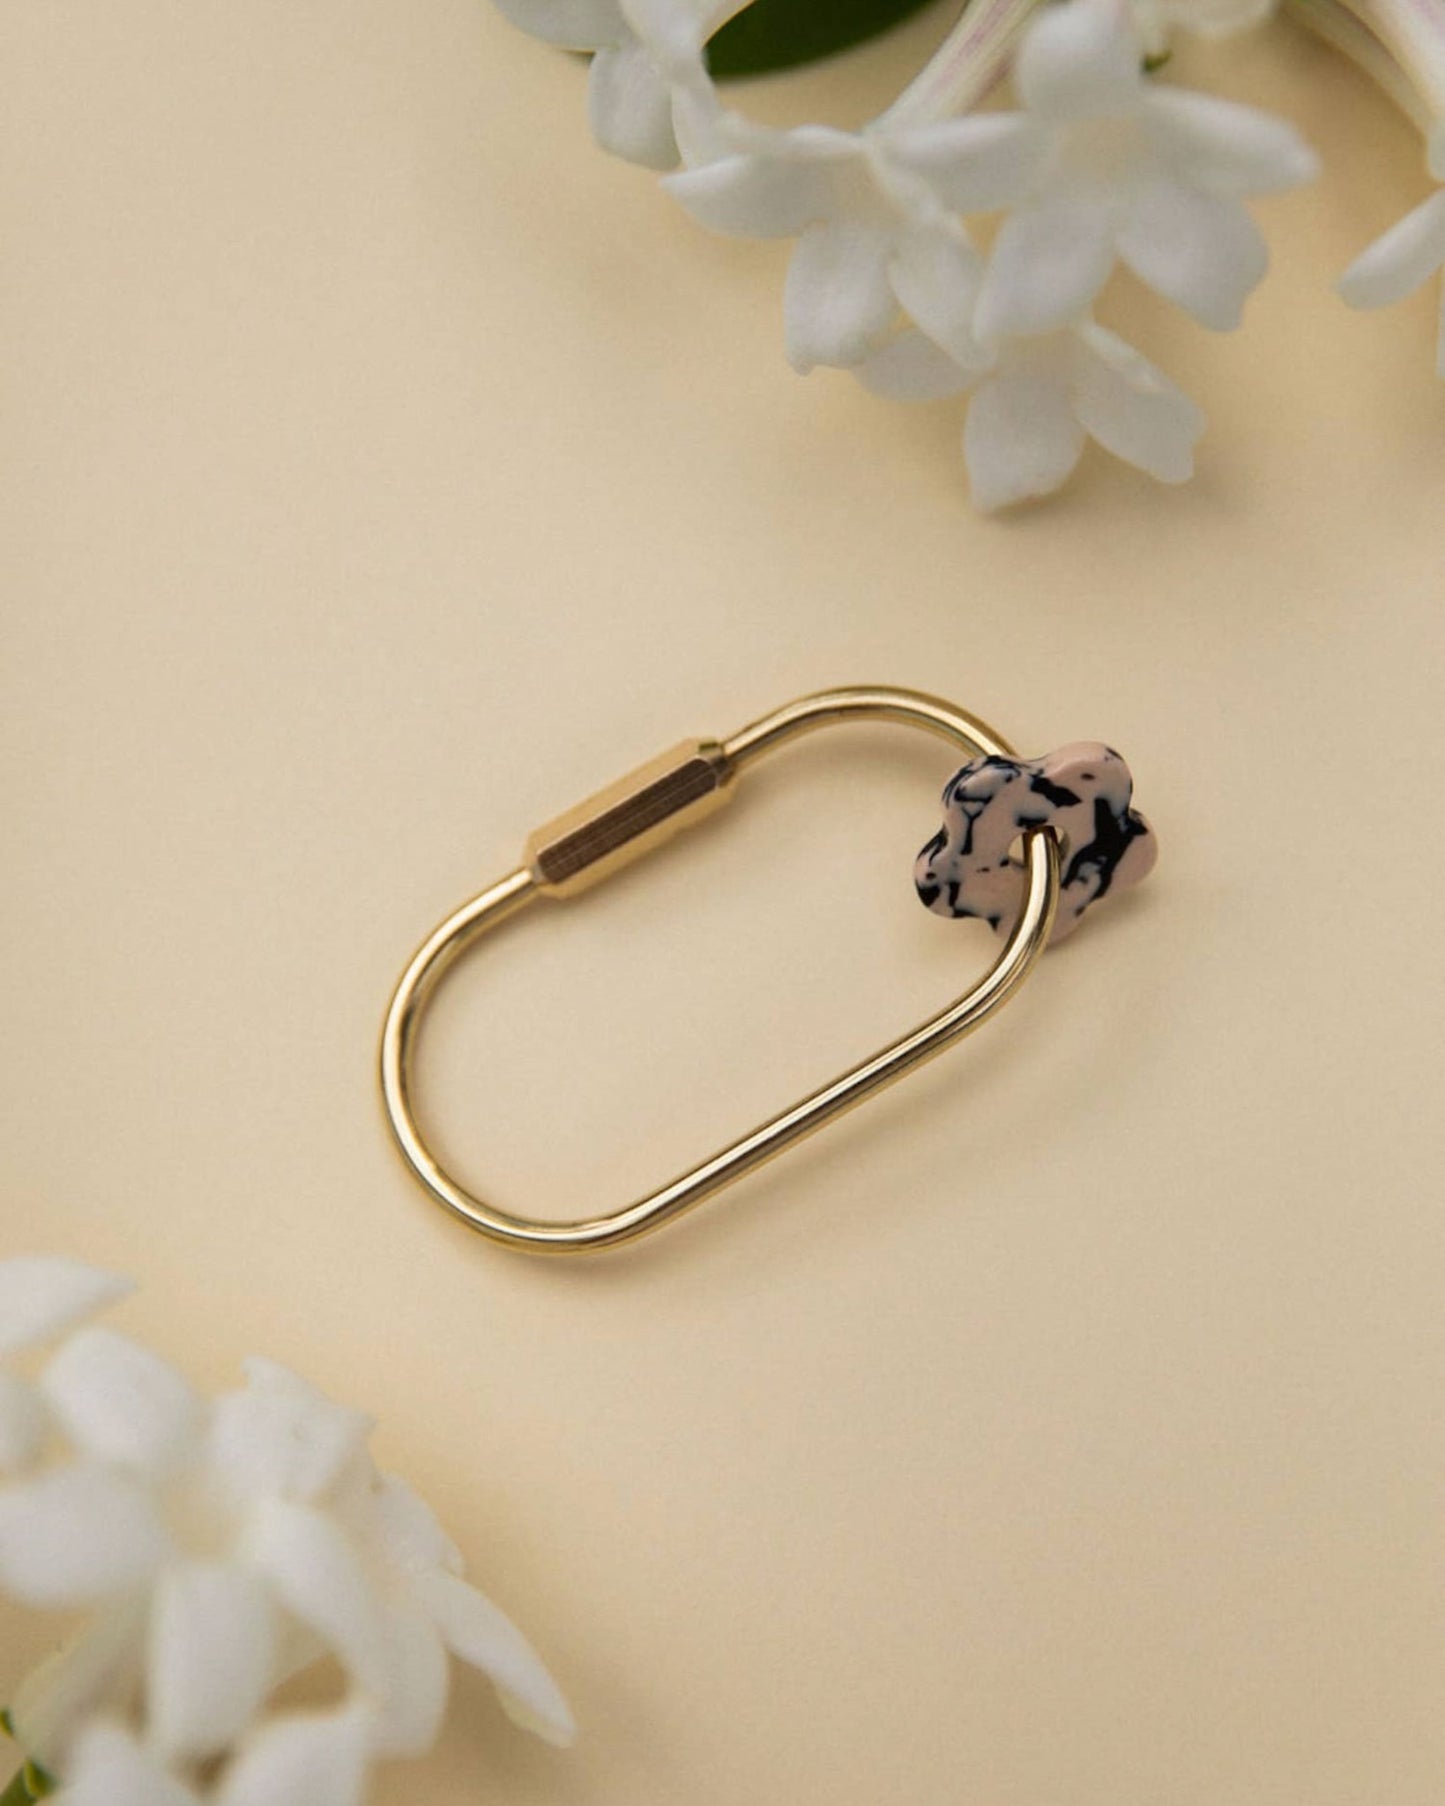 brass flower keychain